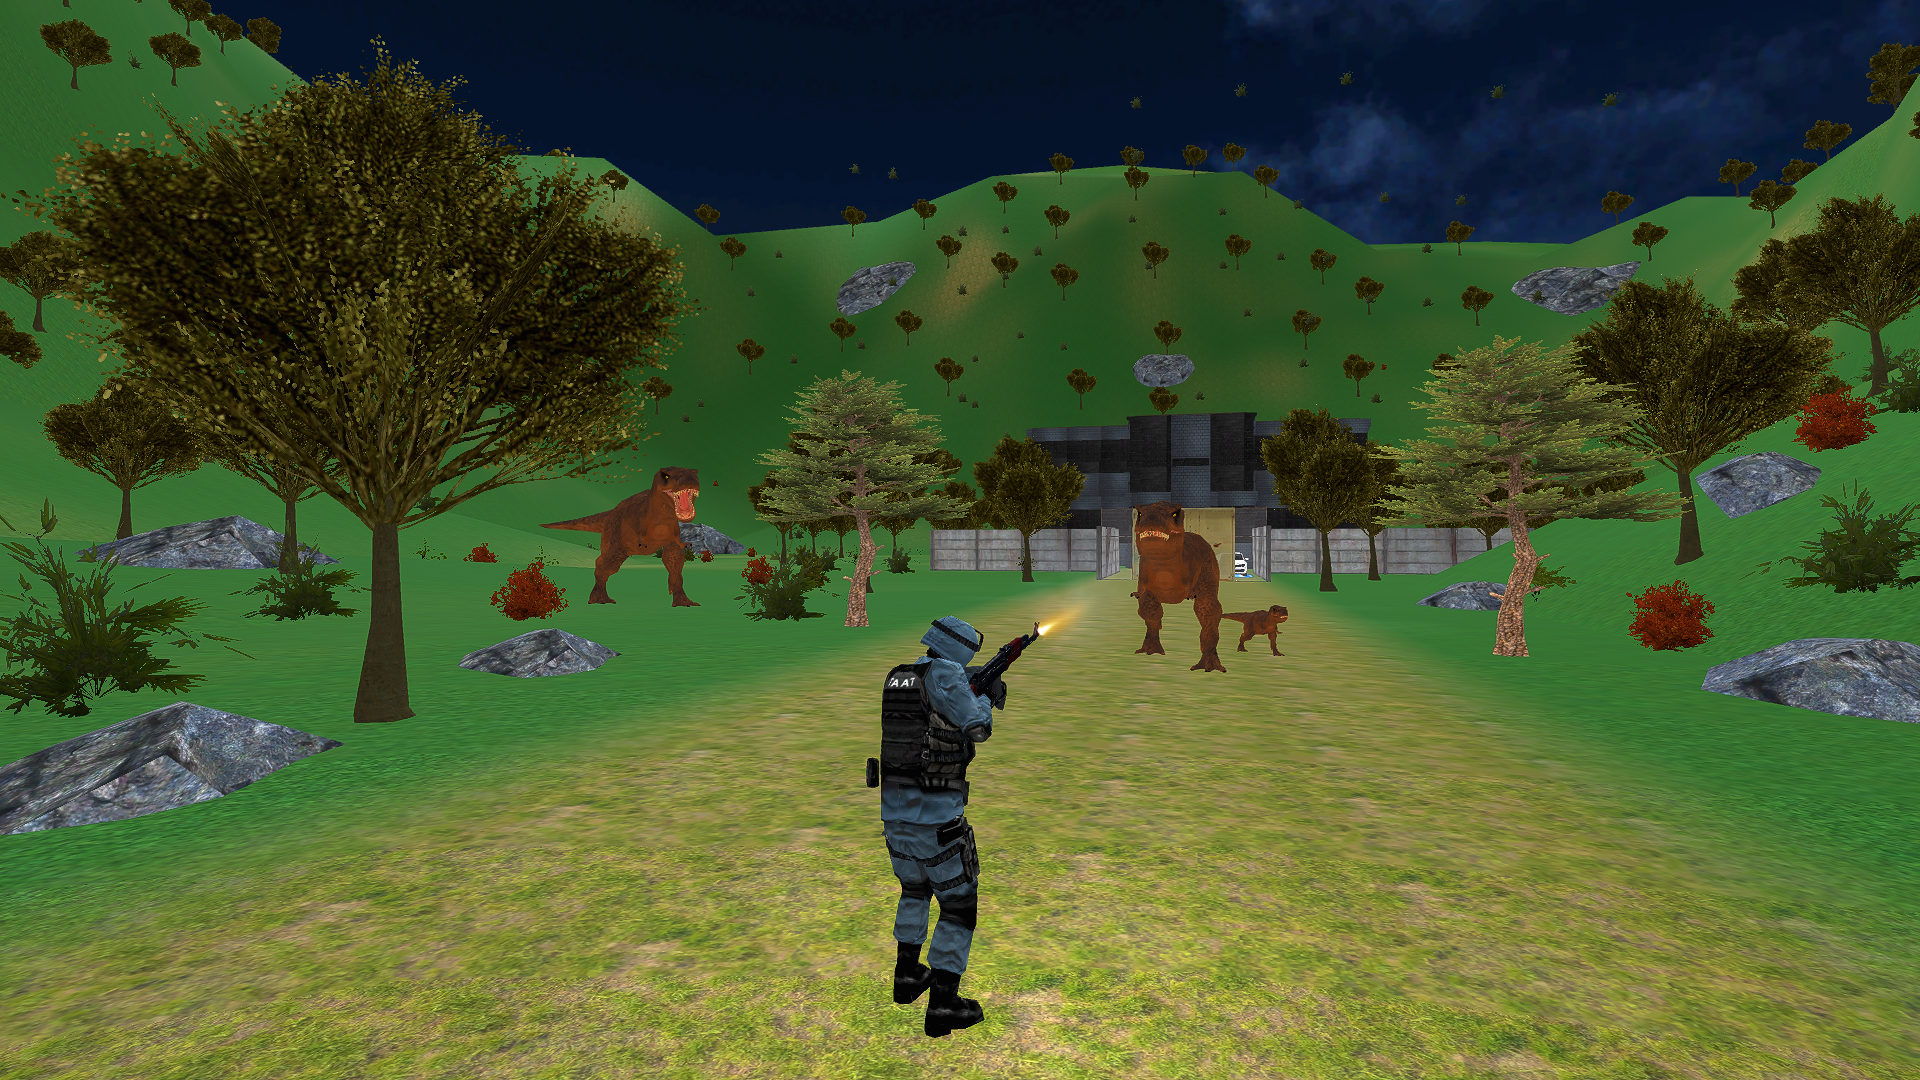 Screenshot 1 of Tir de dinosaure jurassique 3D 1.0.4